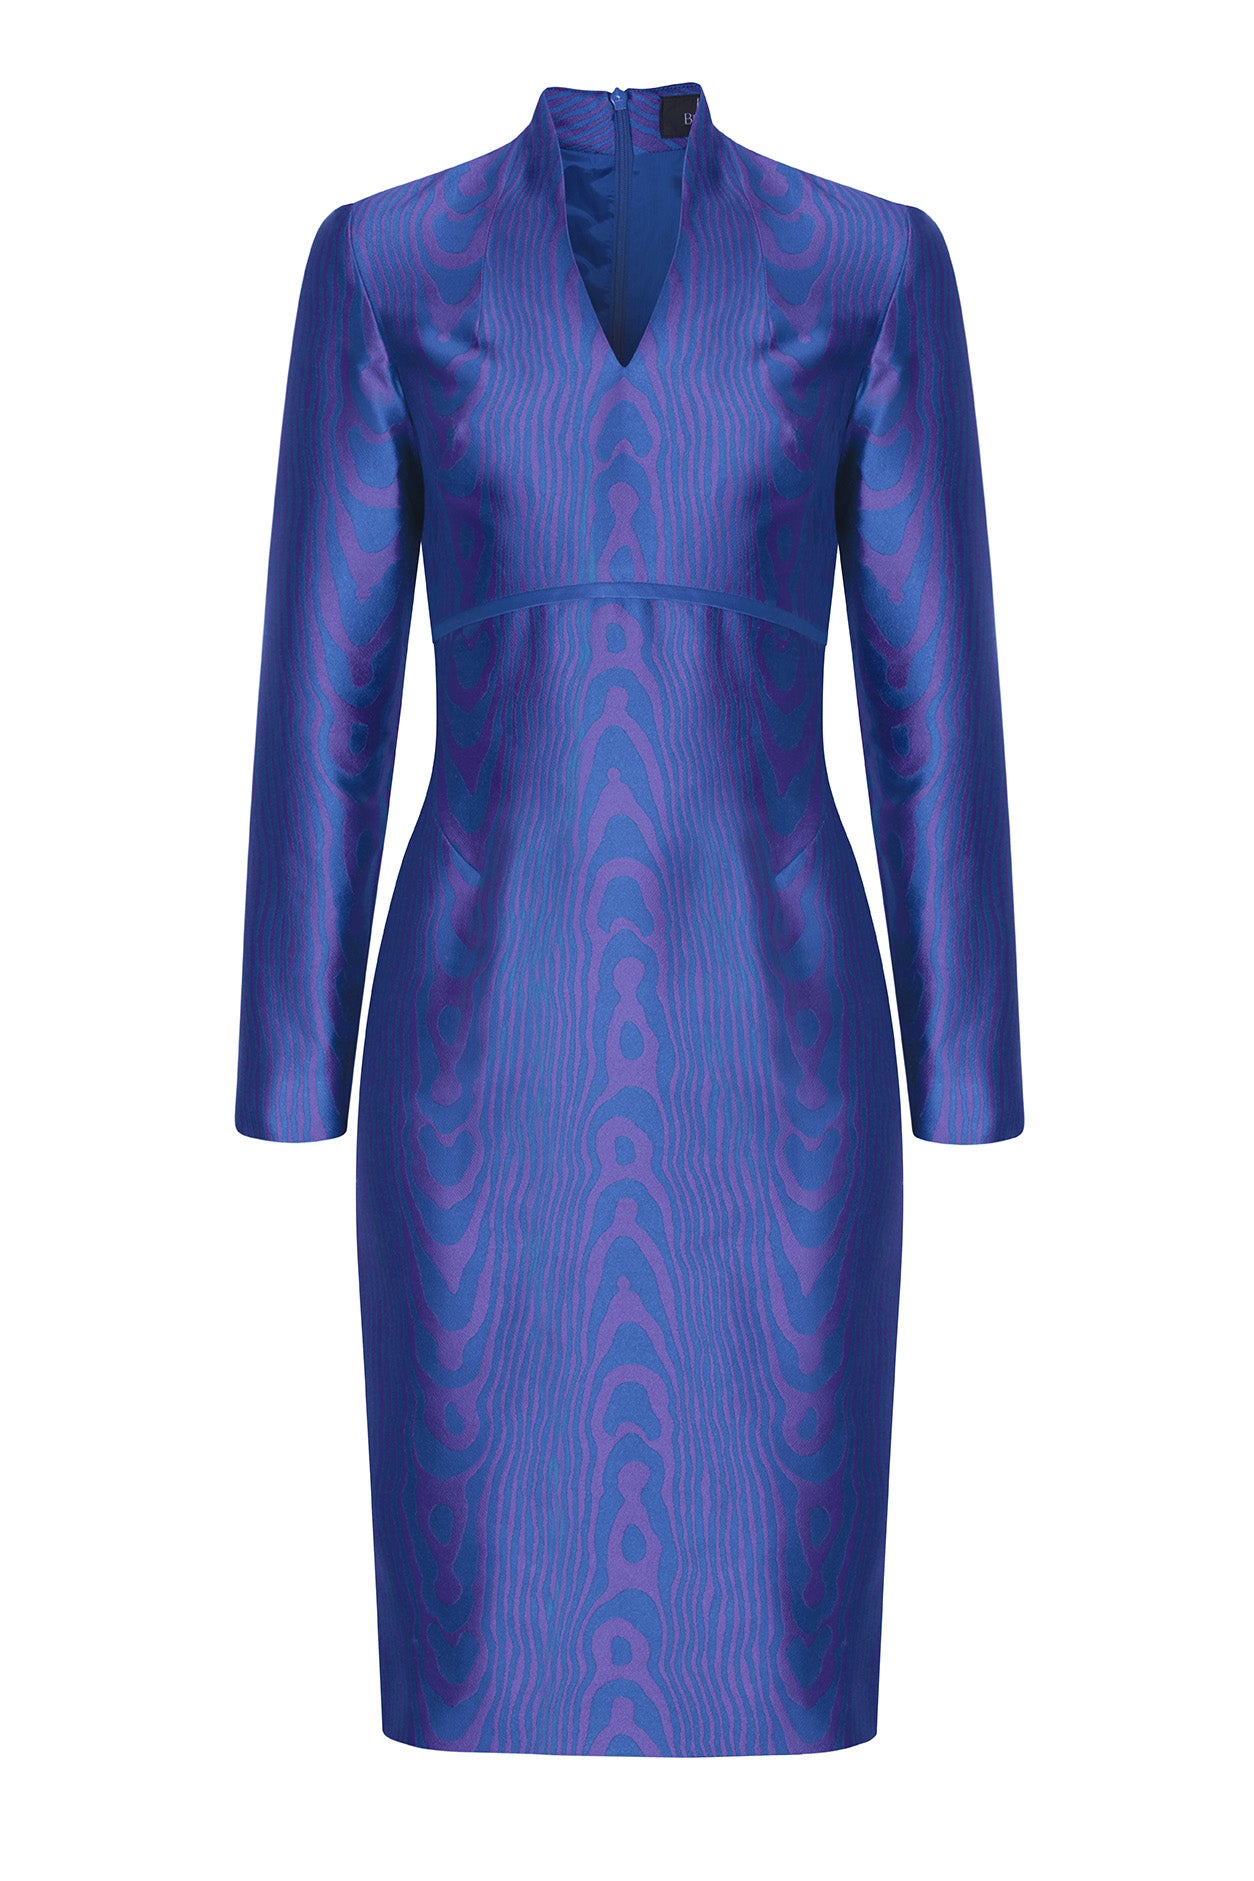 Moiré Silk Sateen Dress in Purple/Royal - Emma